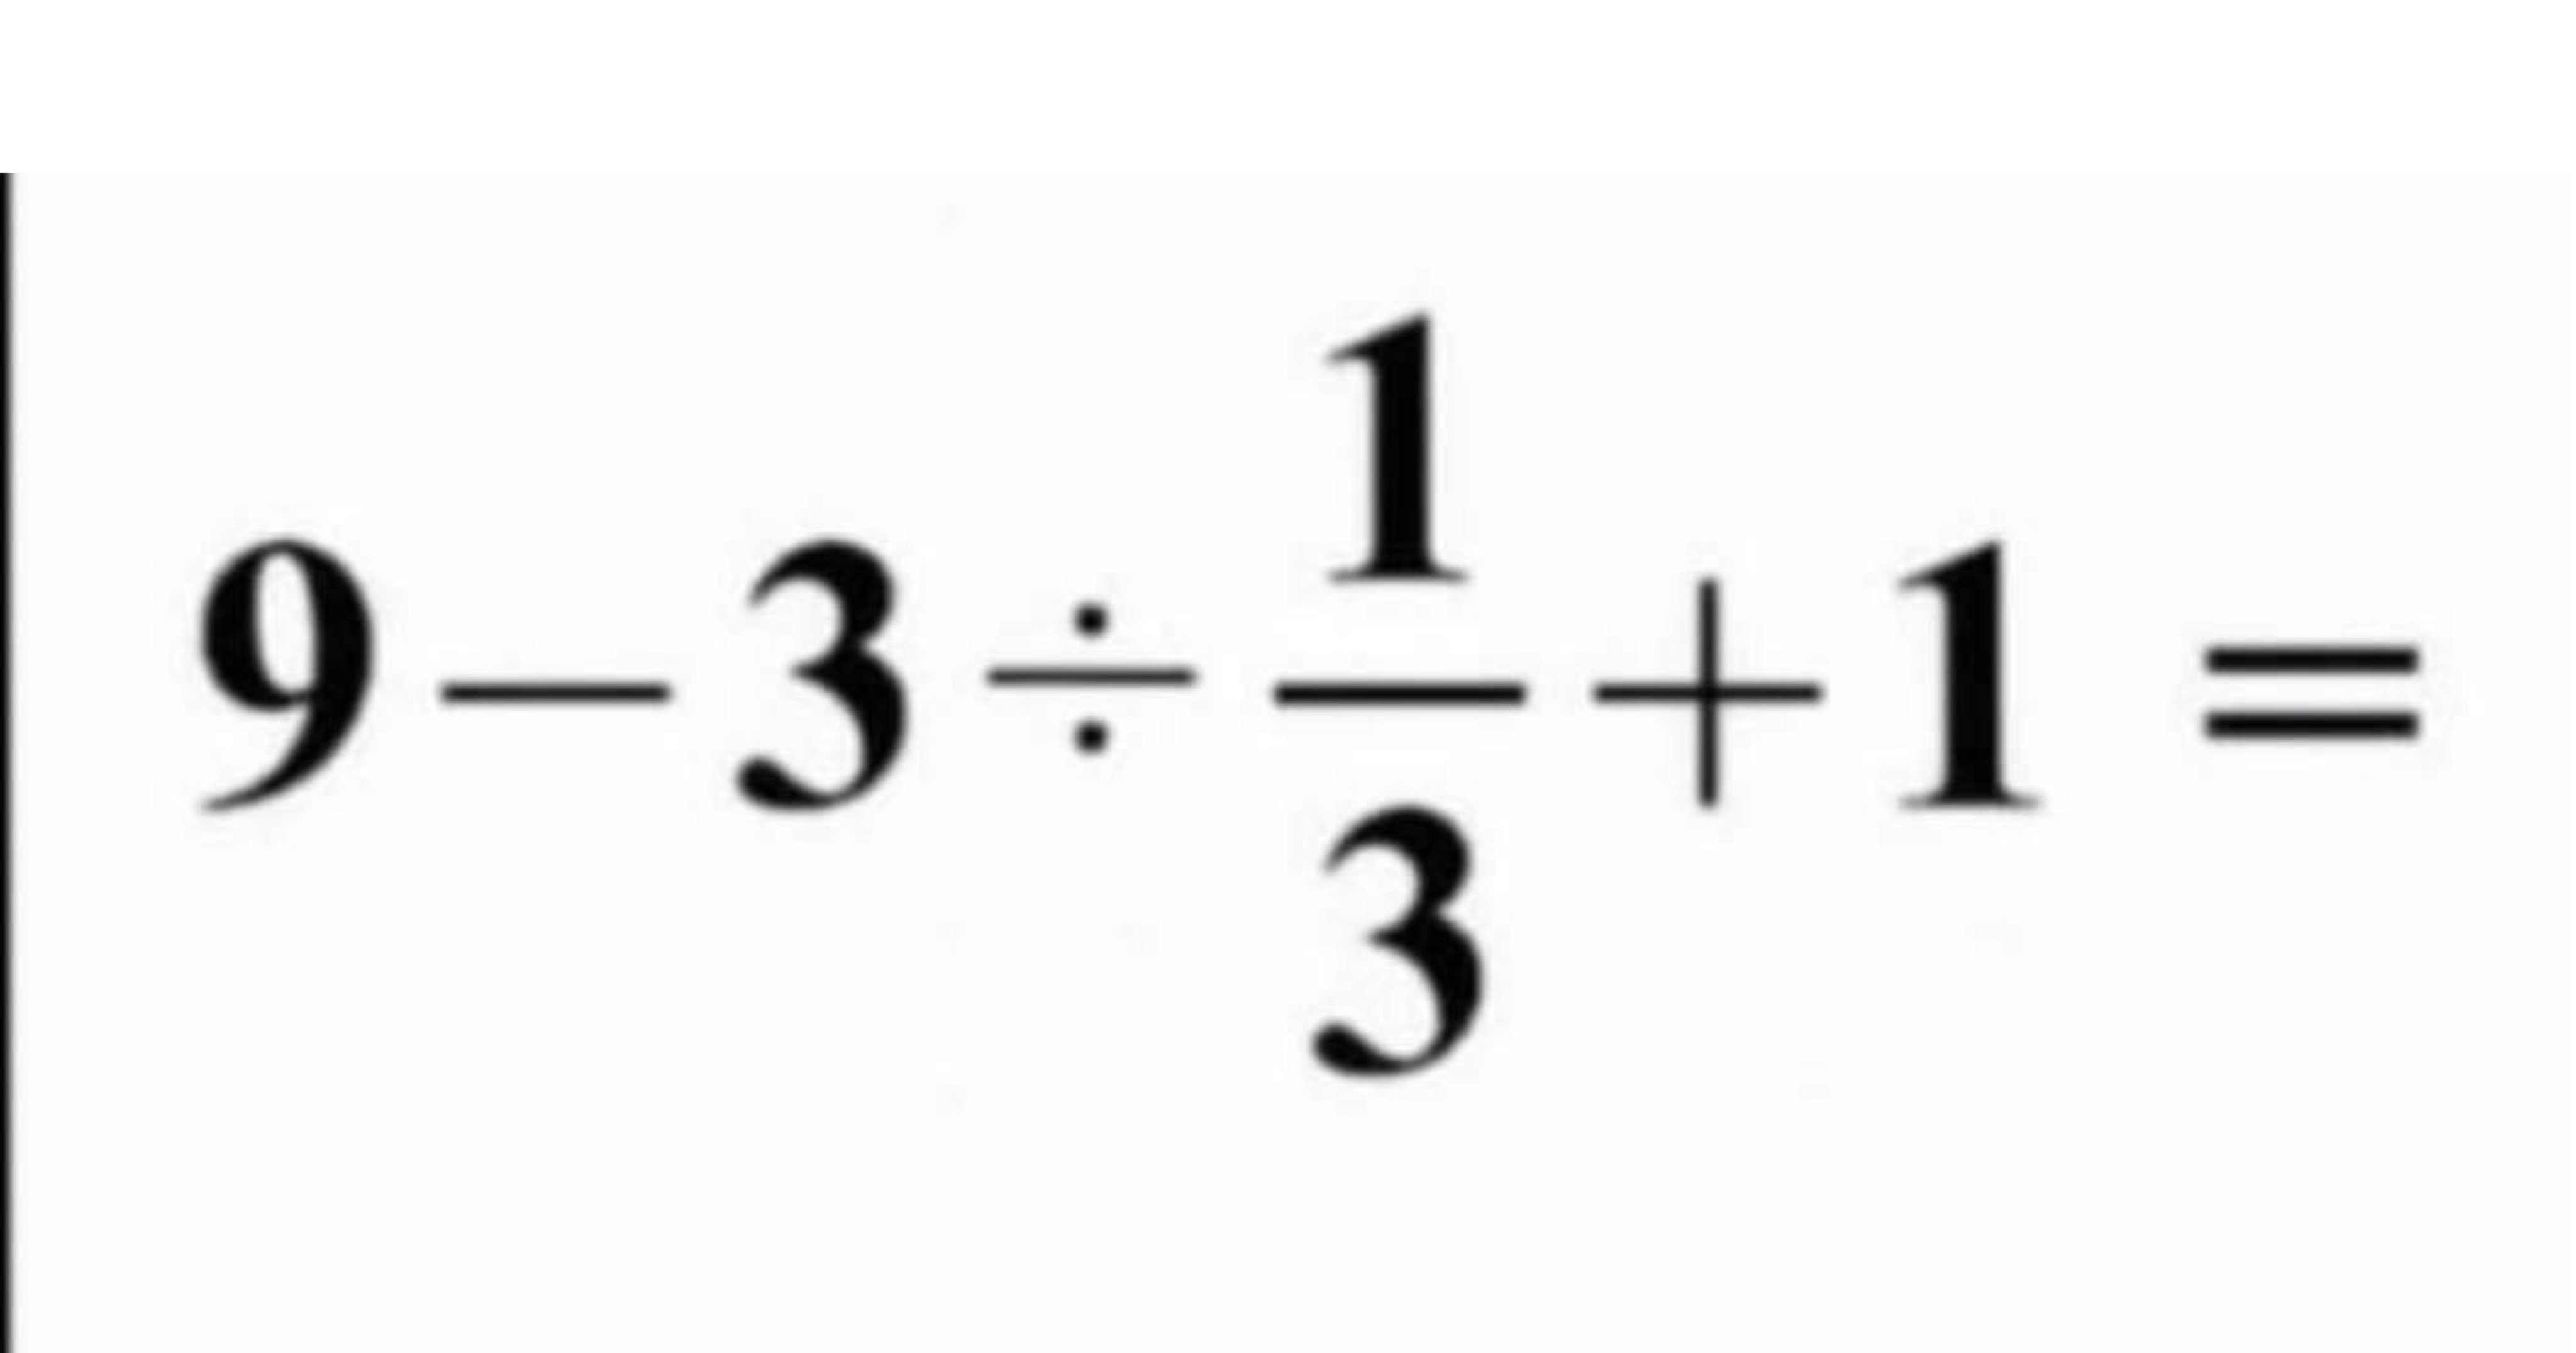 5c7c152f 6b24 4aee add2 68d05b37b5b4.jpeg?resize=1200,630 - 성인의 60프로만 맞췄다는 초등학교 5학년 수학문제..